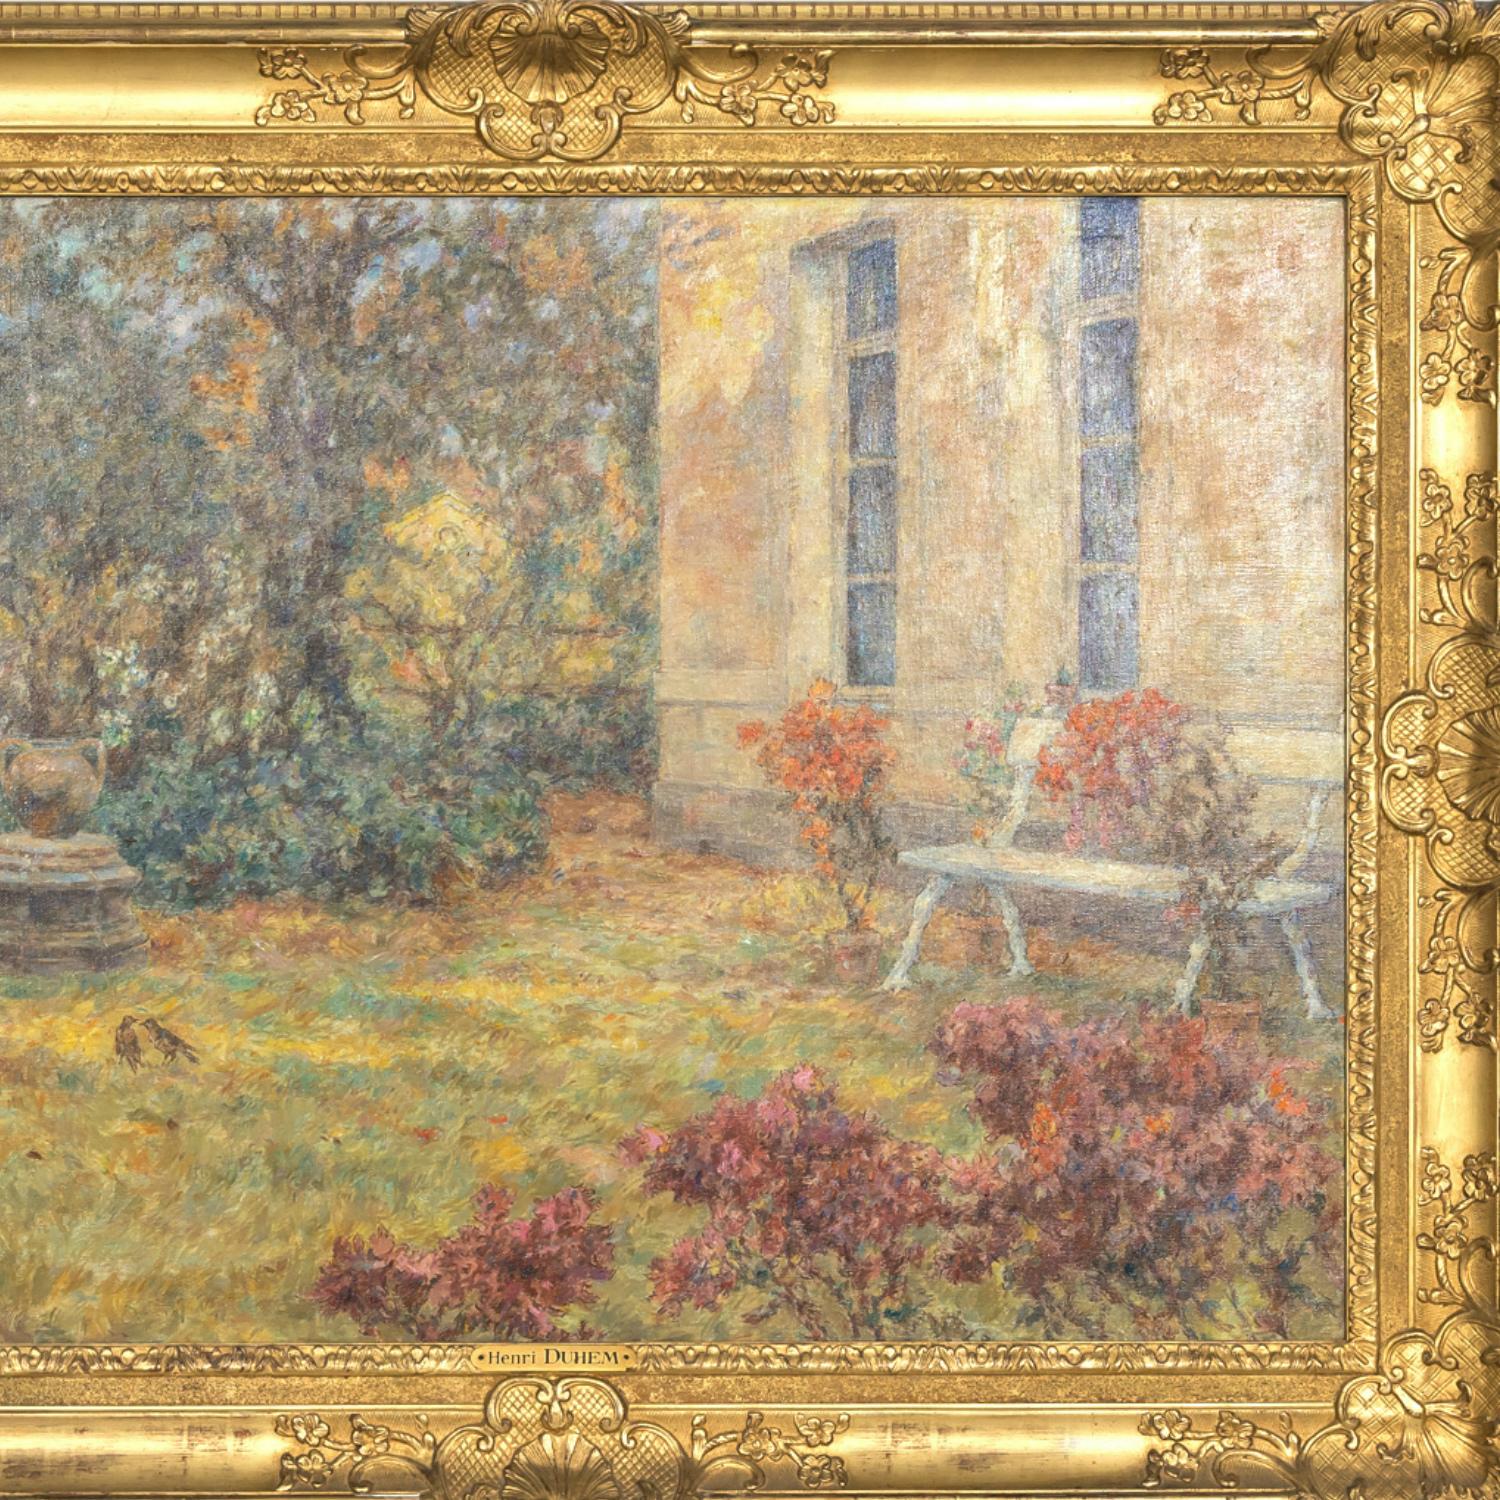 Large Framed French Impressionist Oil Garden Landscape by Henri Duhem, Signed 2